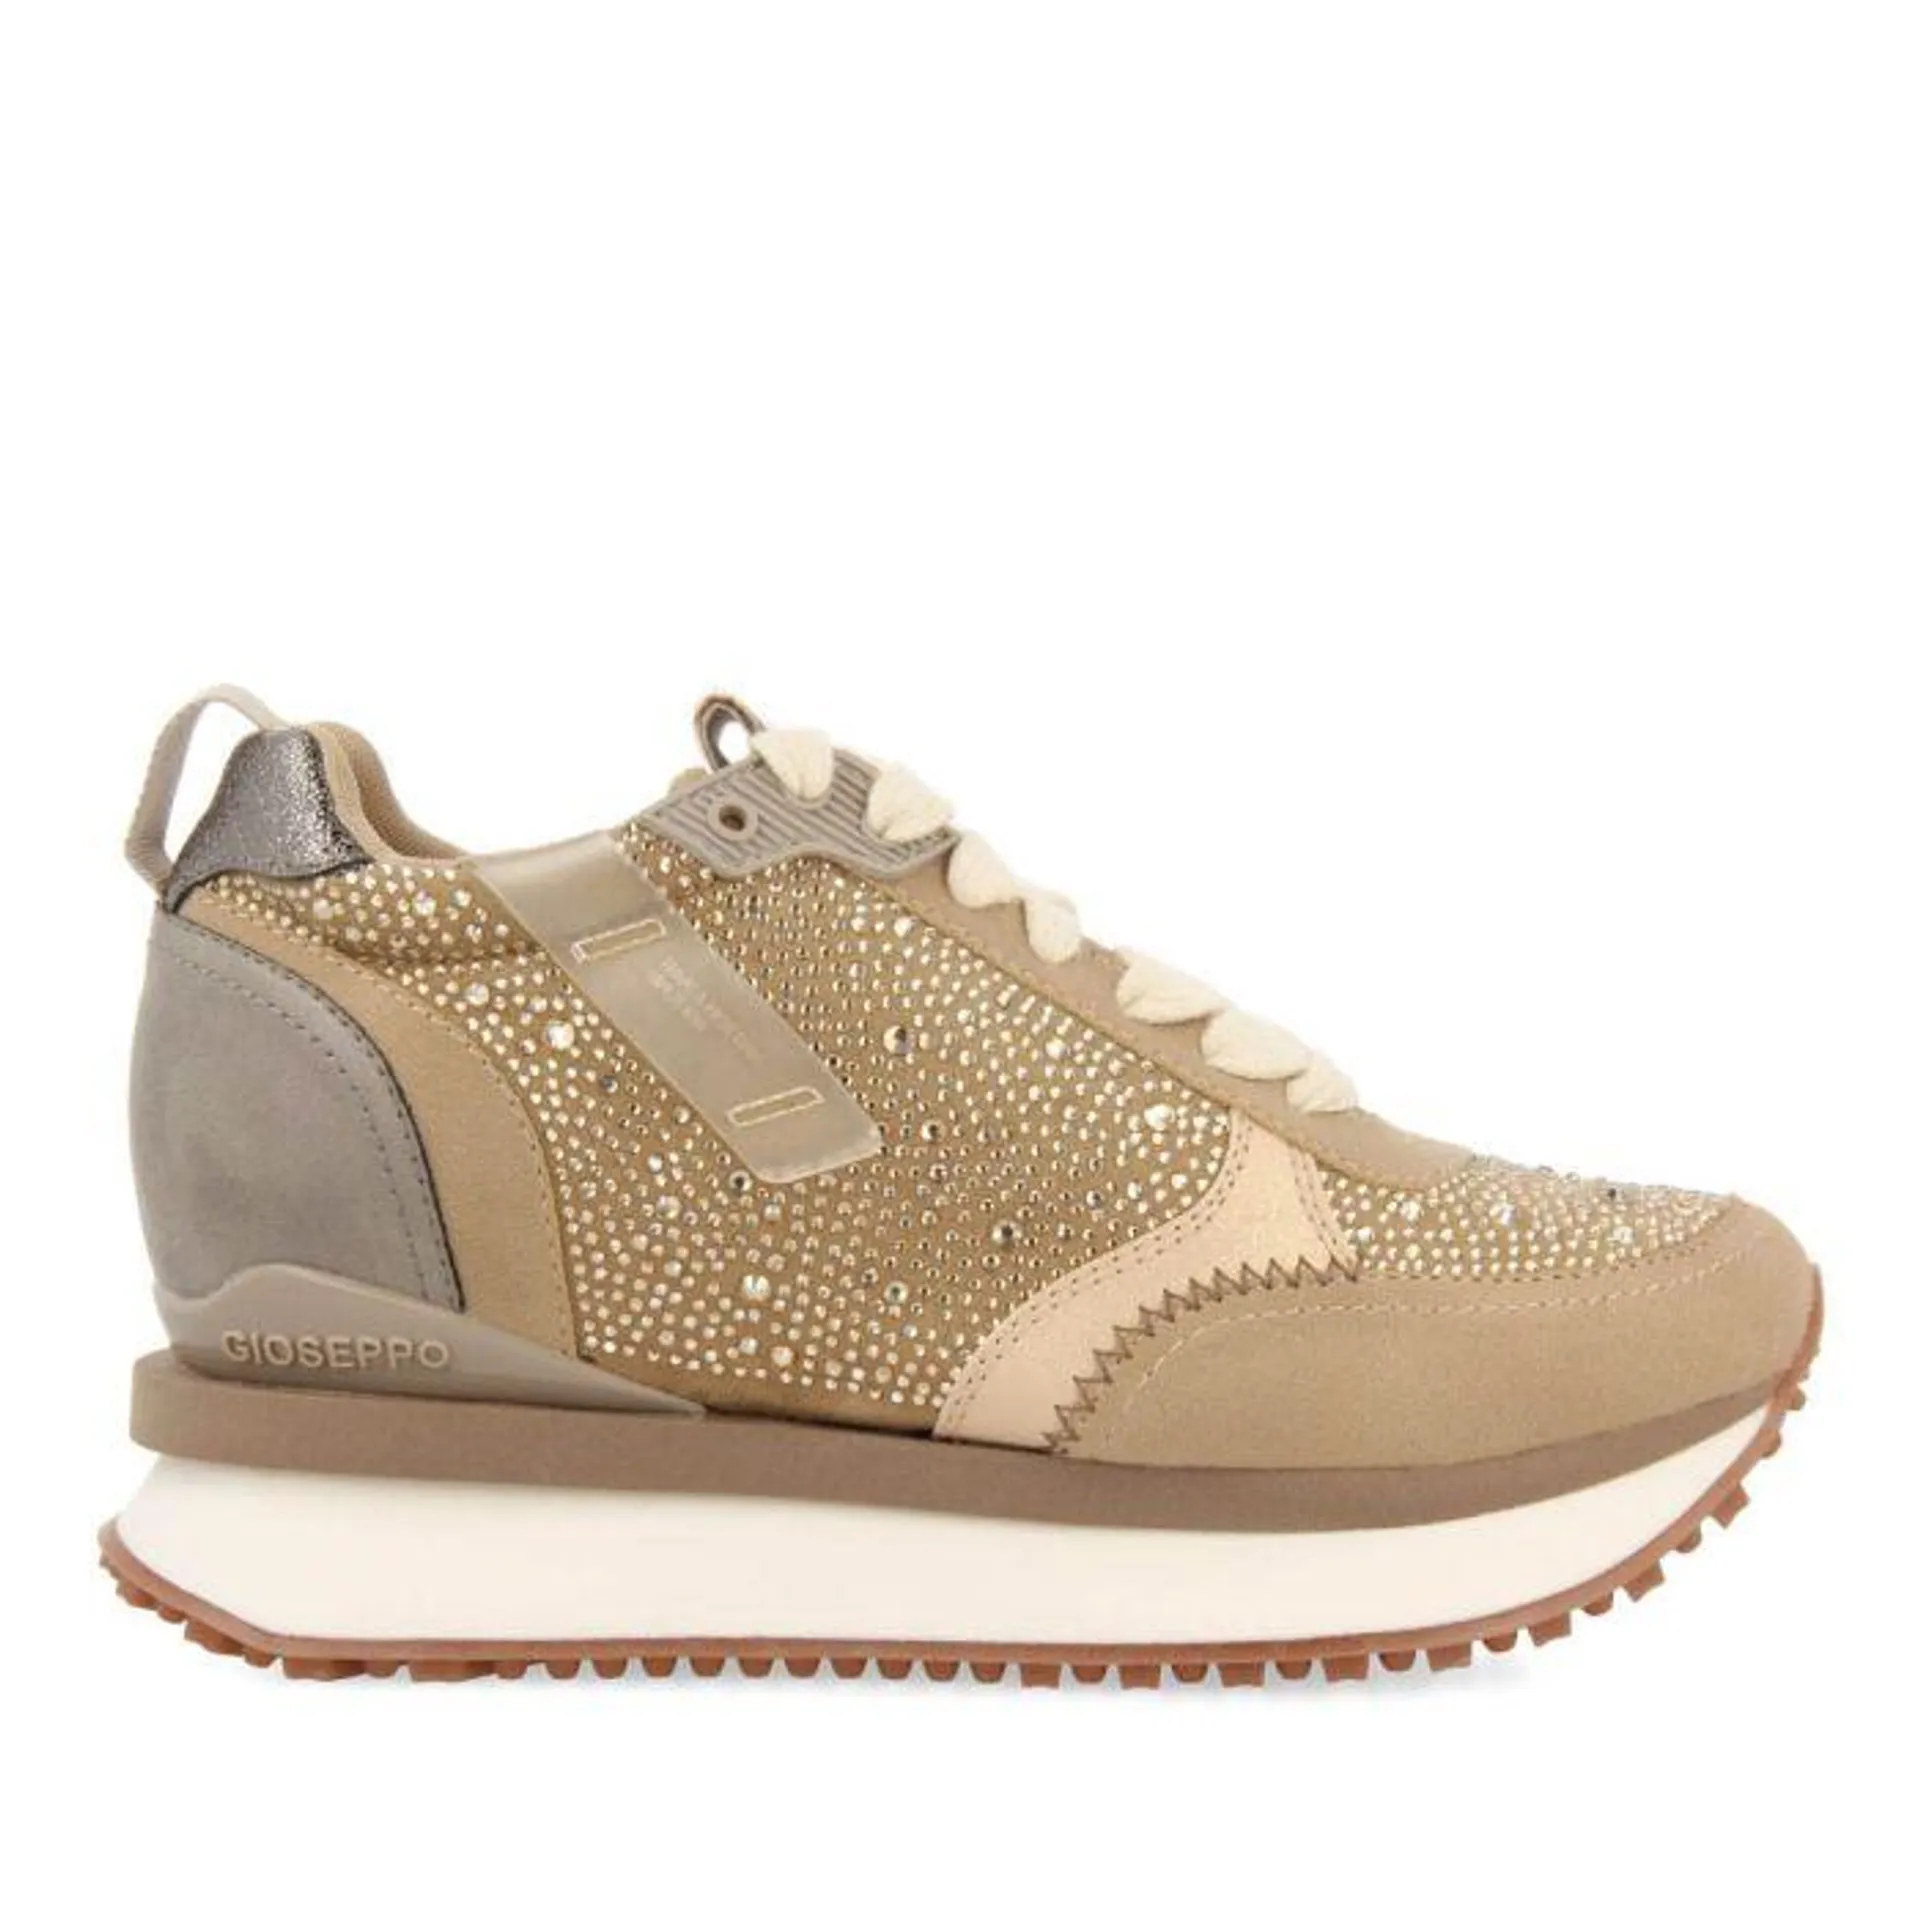 Hanko women's beige monochrome sneakers with crystals